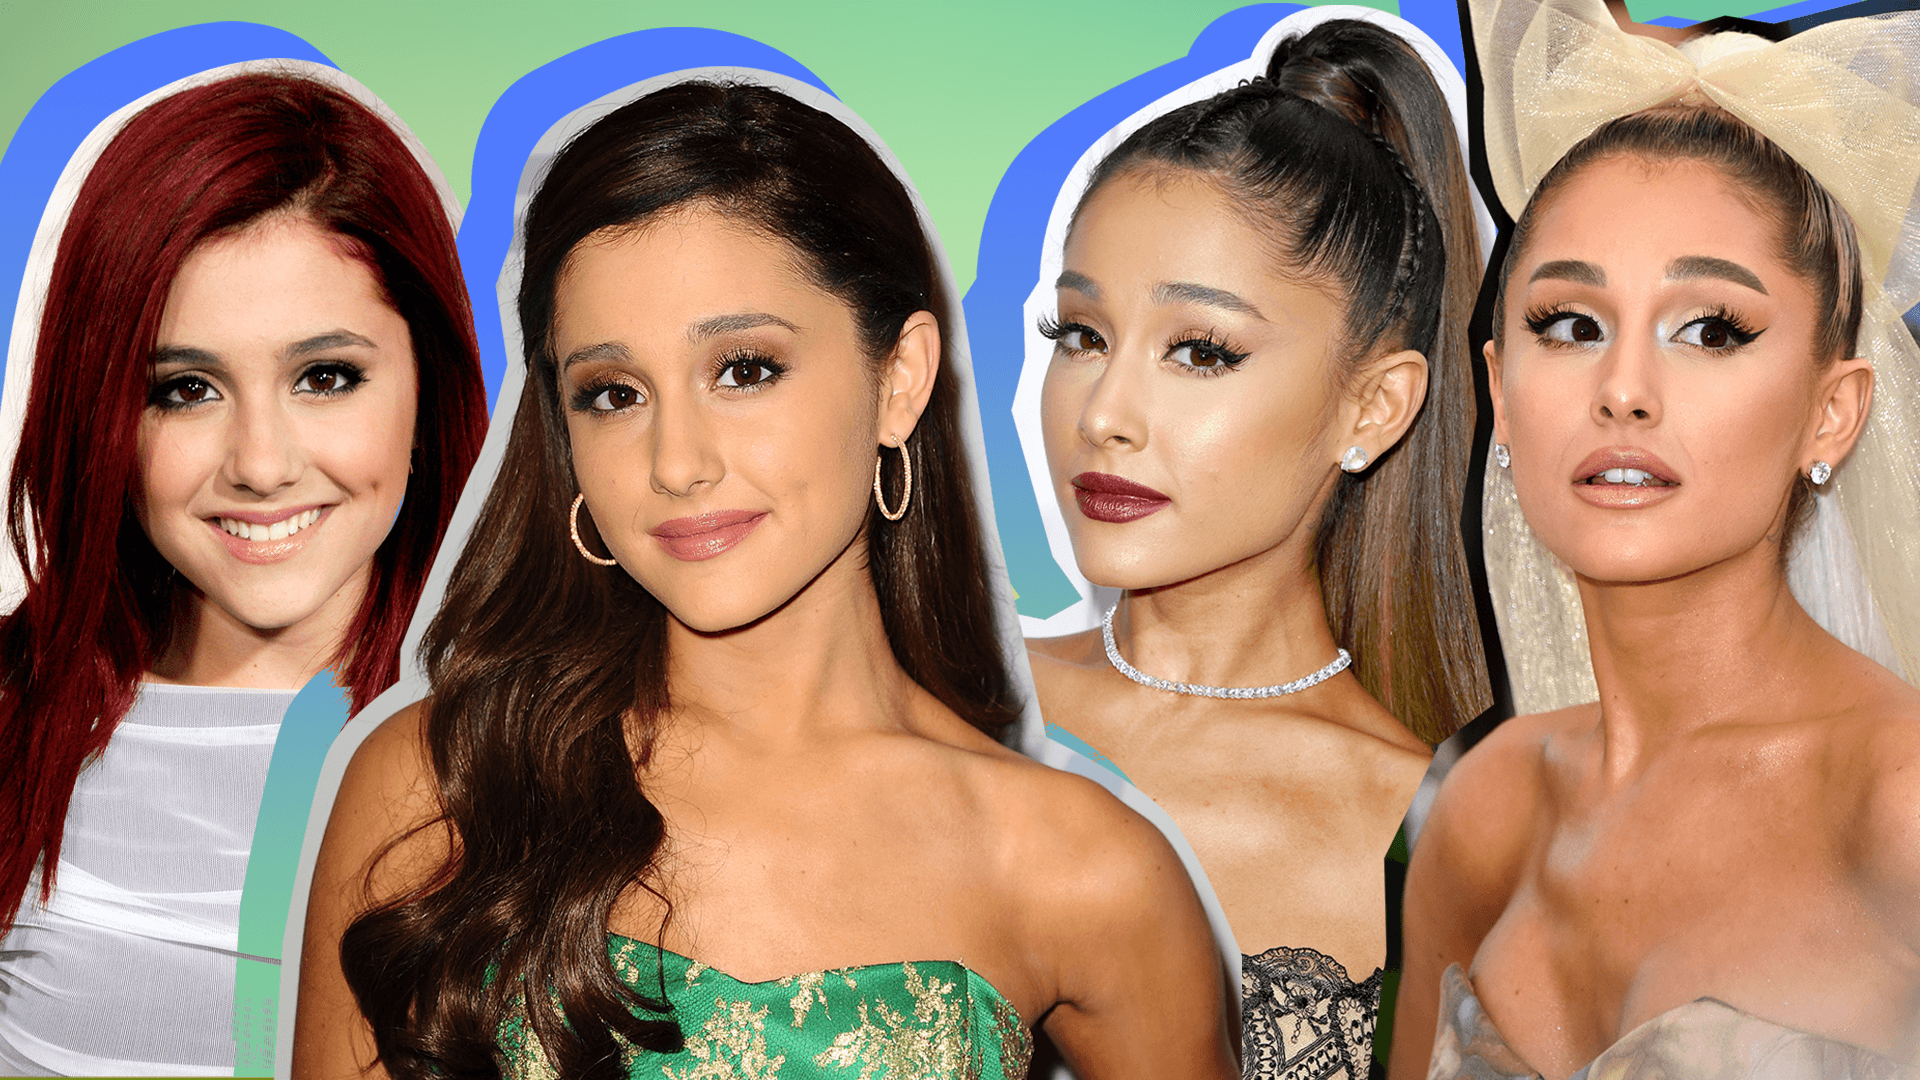 Ariana Grande's Beauty Evolution to Pop Princess